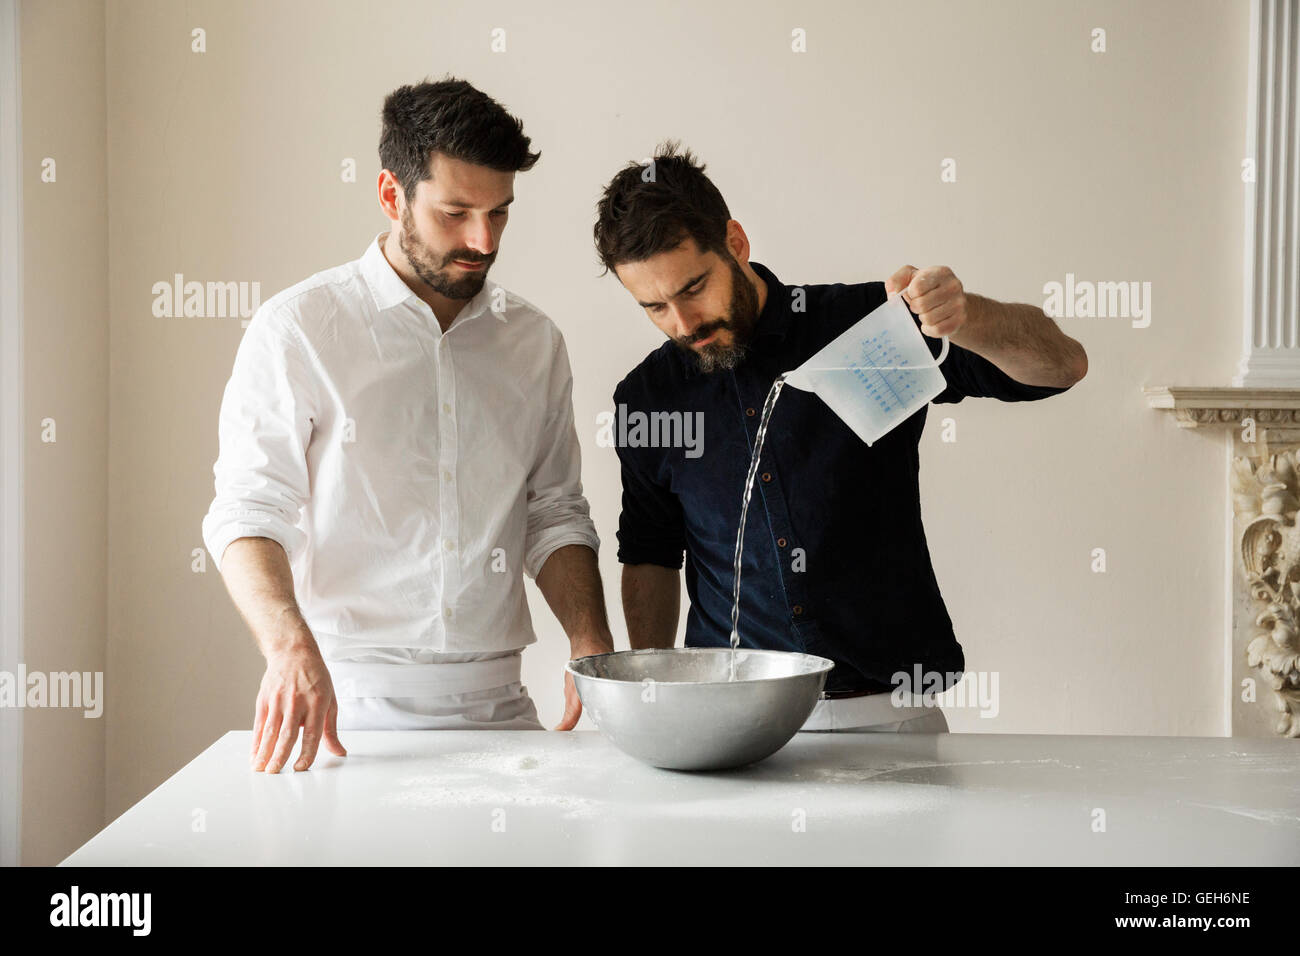 Zwei Bäcker an einem Tisch stehend, Brotteig vorbereiten, gießt Wasser aus einem Messgerät Krug in eine Rührschüssel Metall. Stockfoto